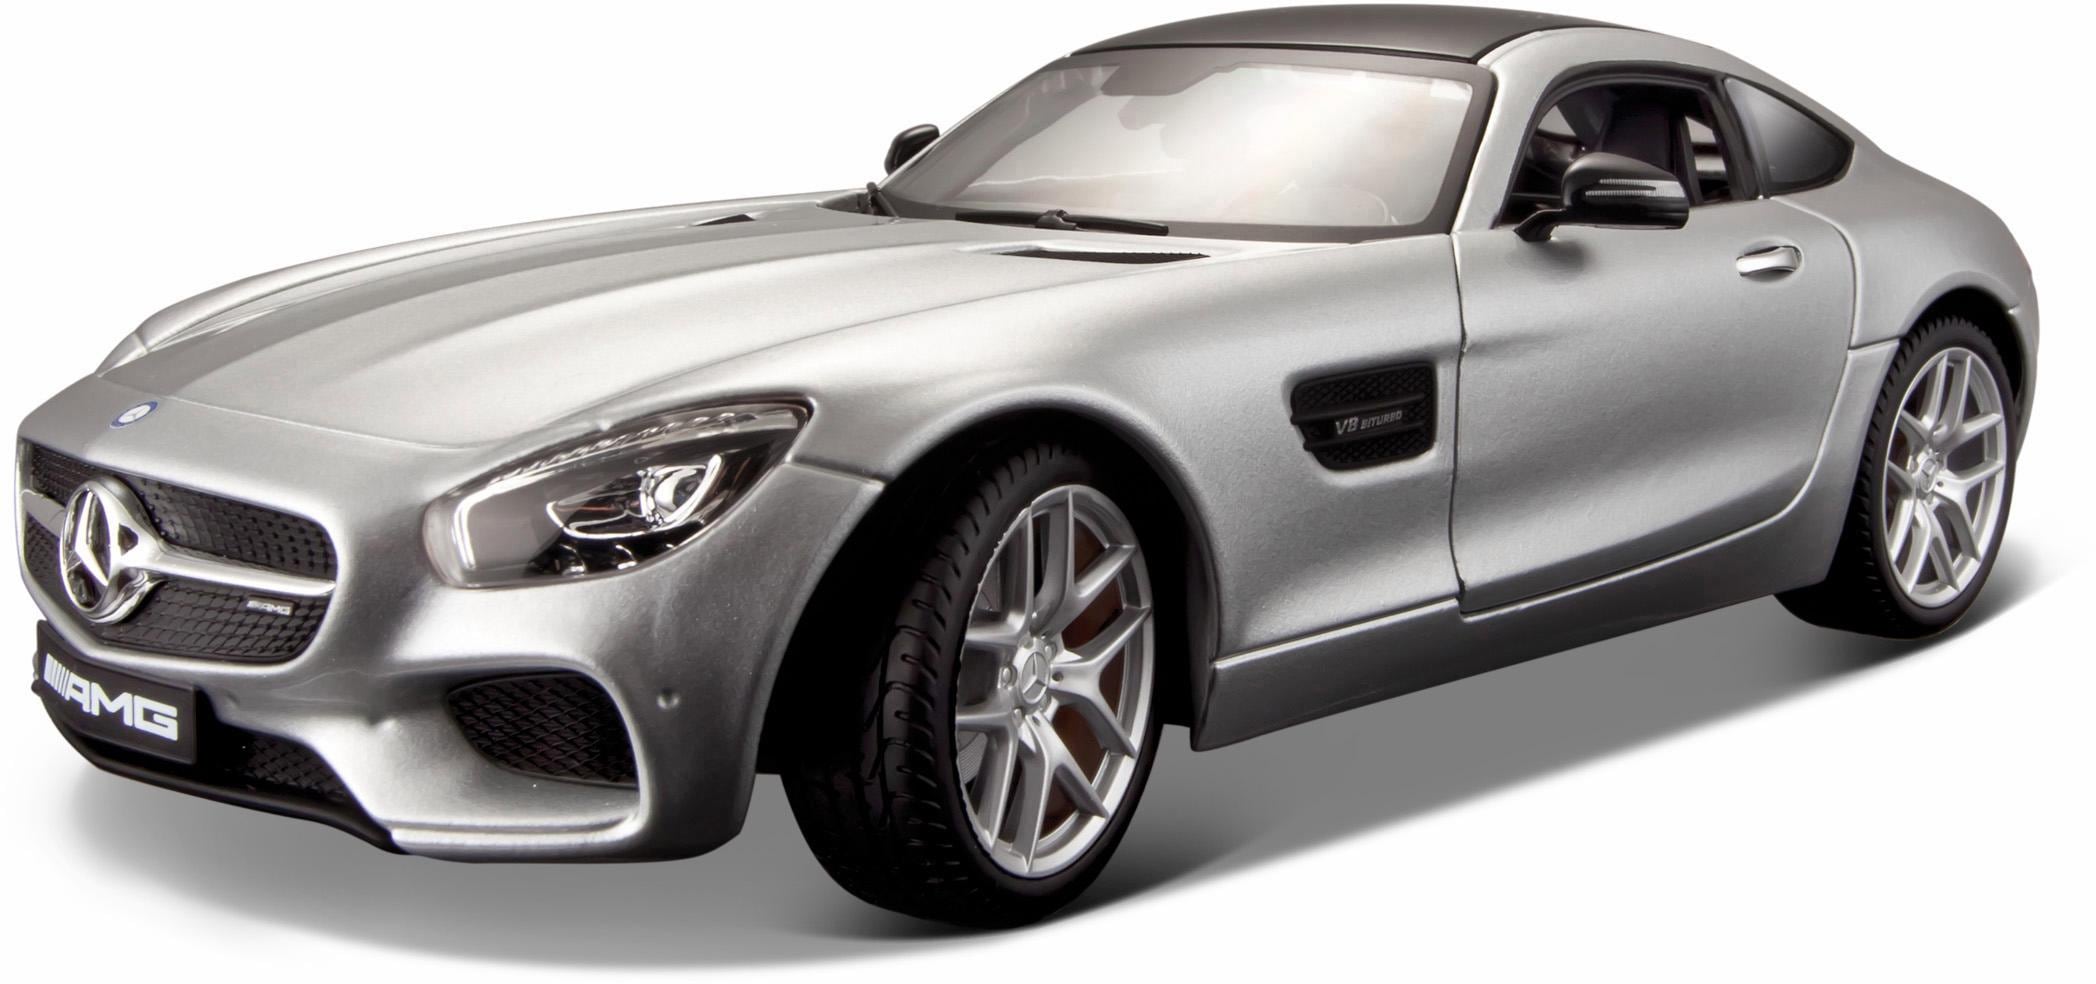 Maisto® Sammlerauto »Mercedes AMG GT, 1:18, silberfarben«, 1:18, mit Lenkung und Federung